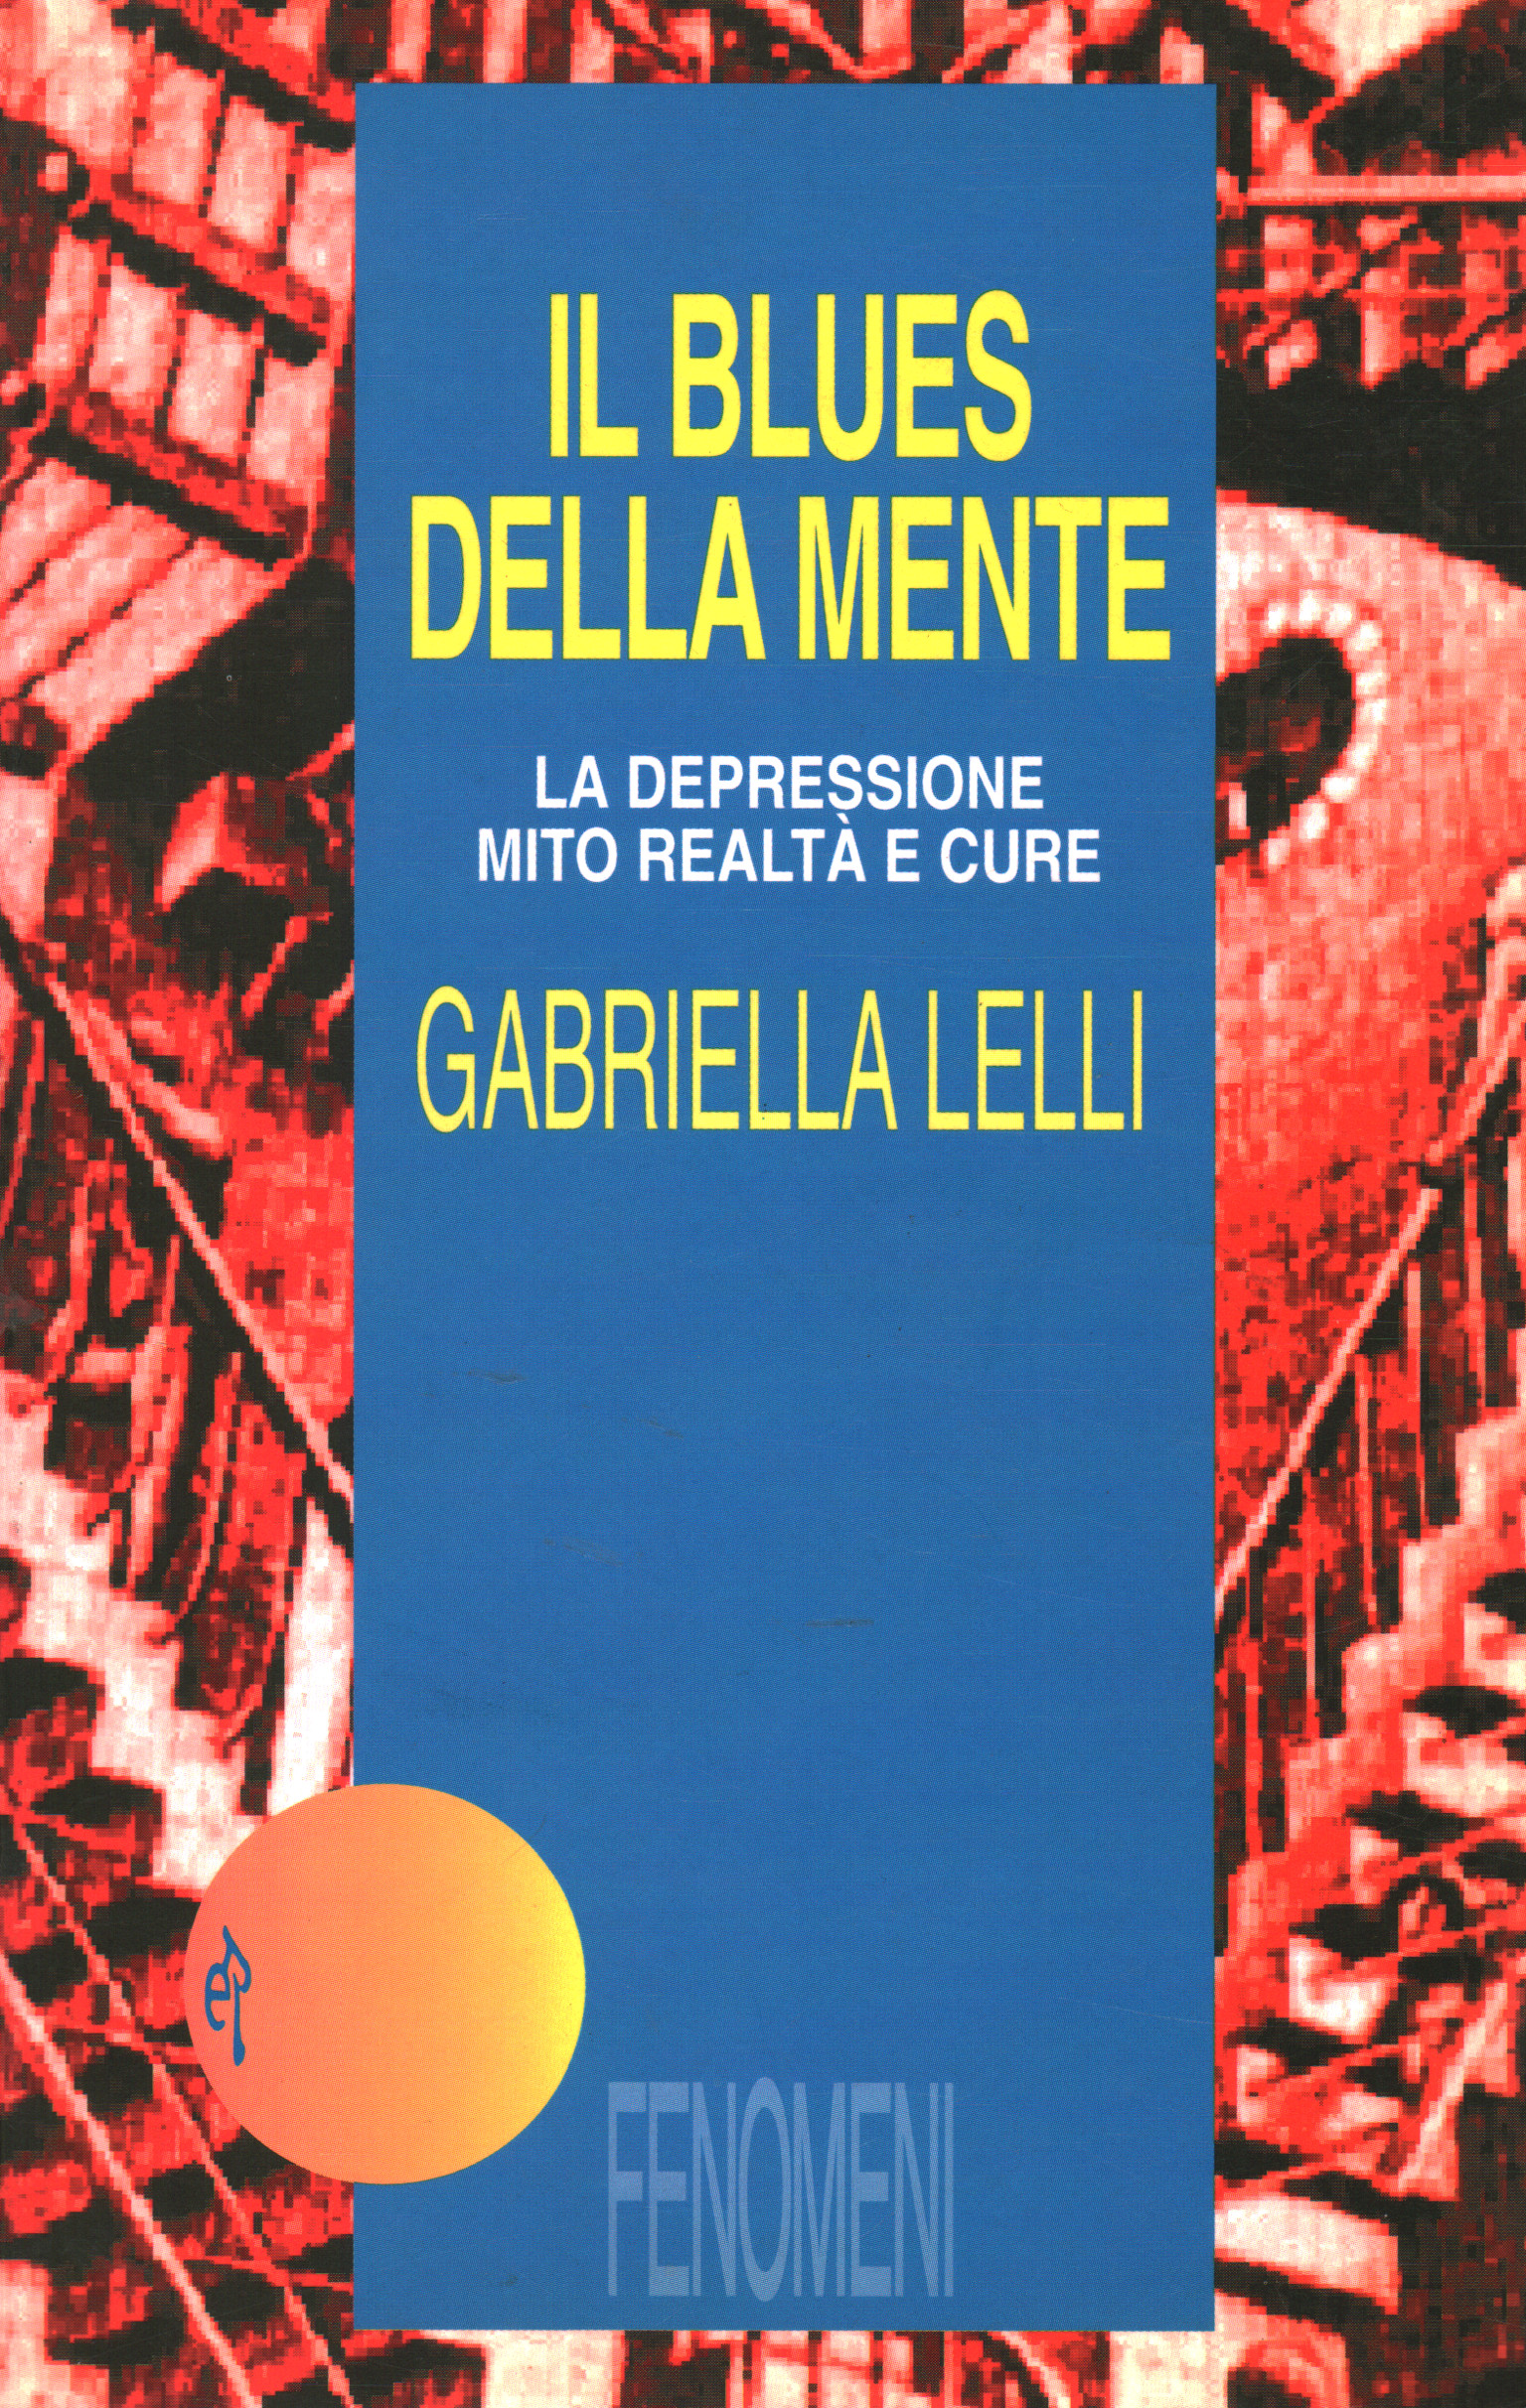 Il blues della mente, Gabriella Lelli